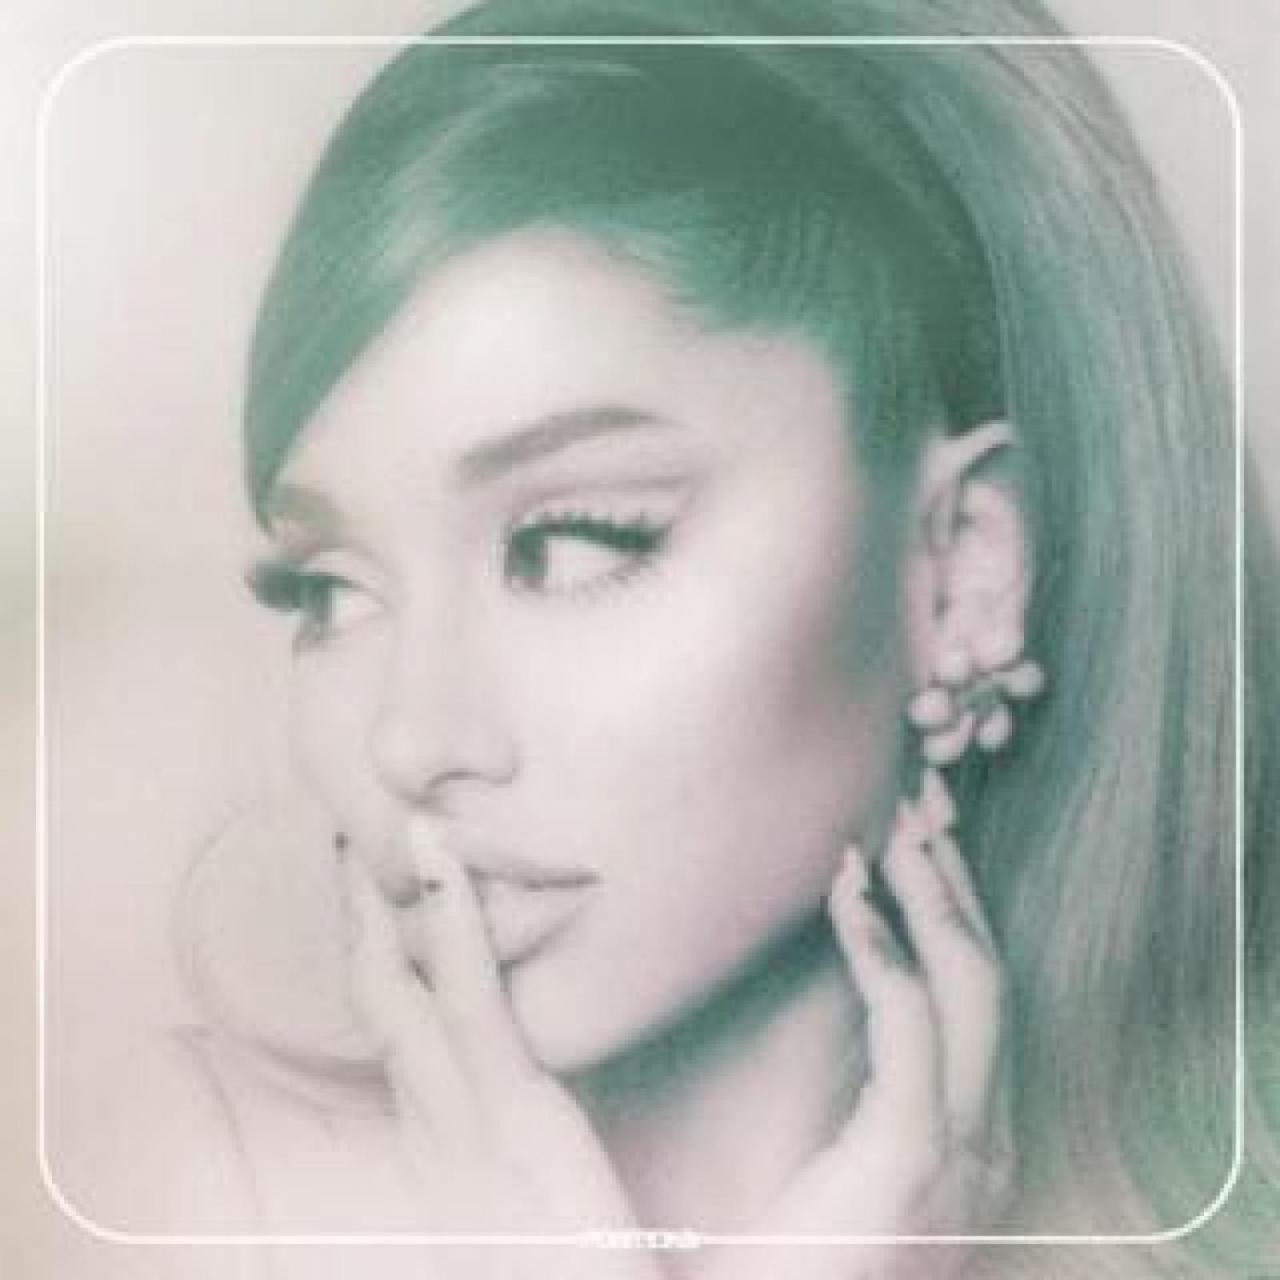 Ariana Grande – Positions (Deluxe) ZIP Full Album MP3 